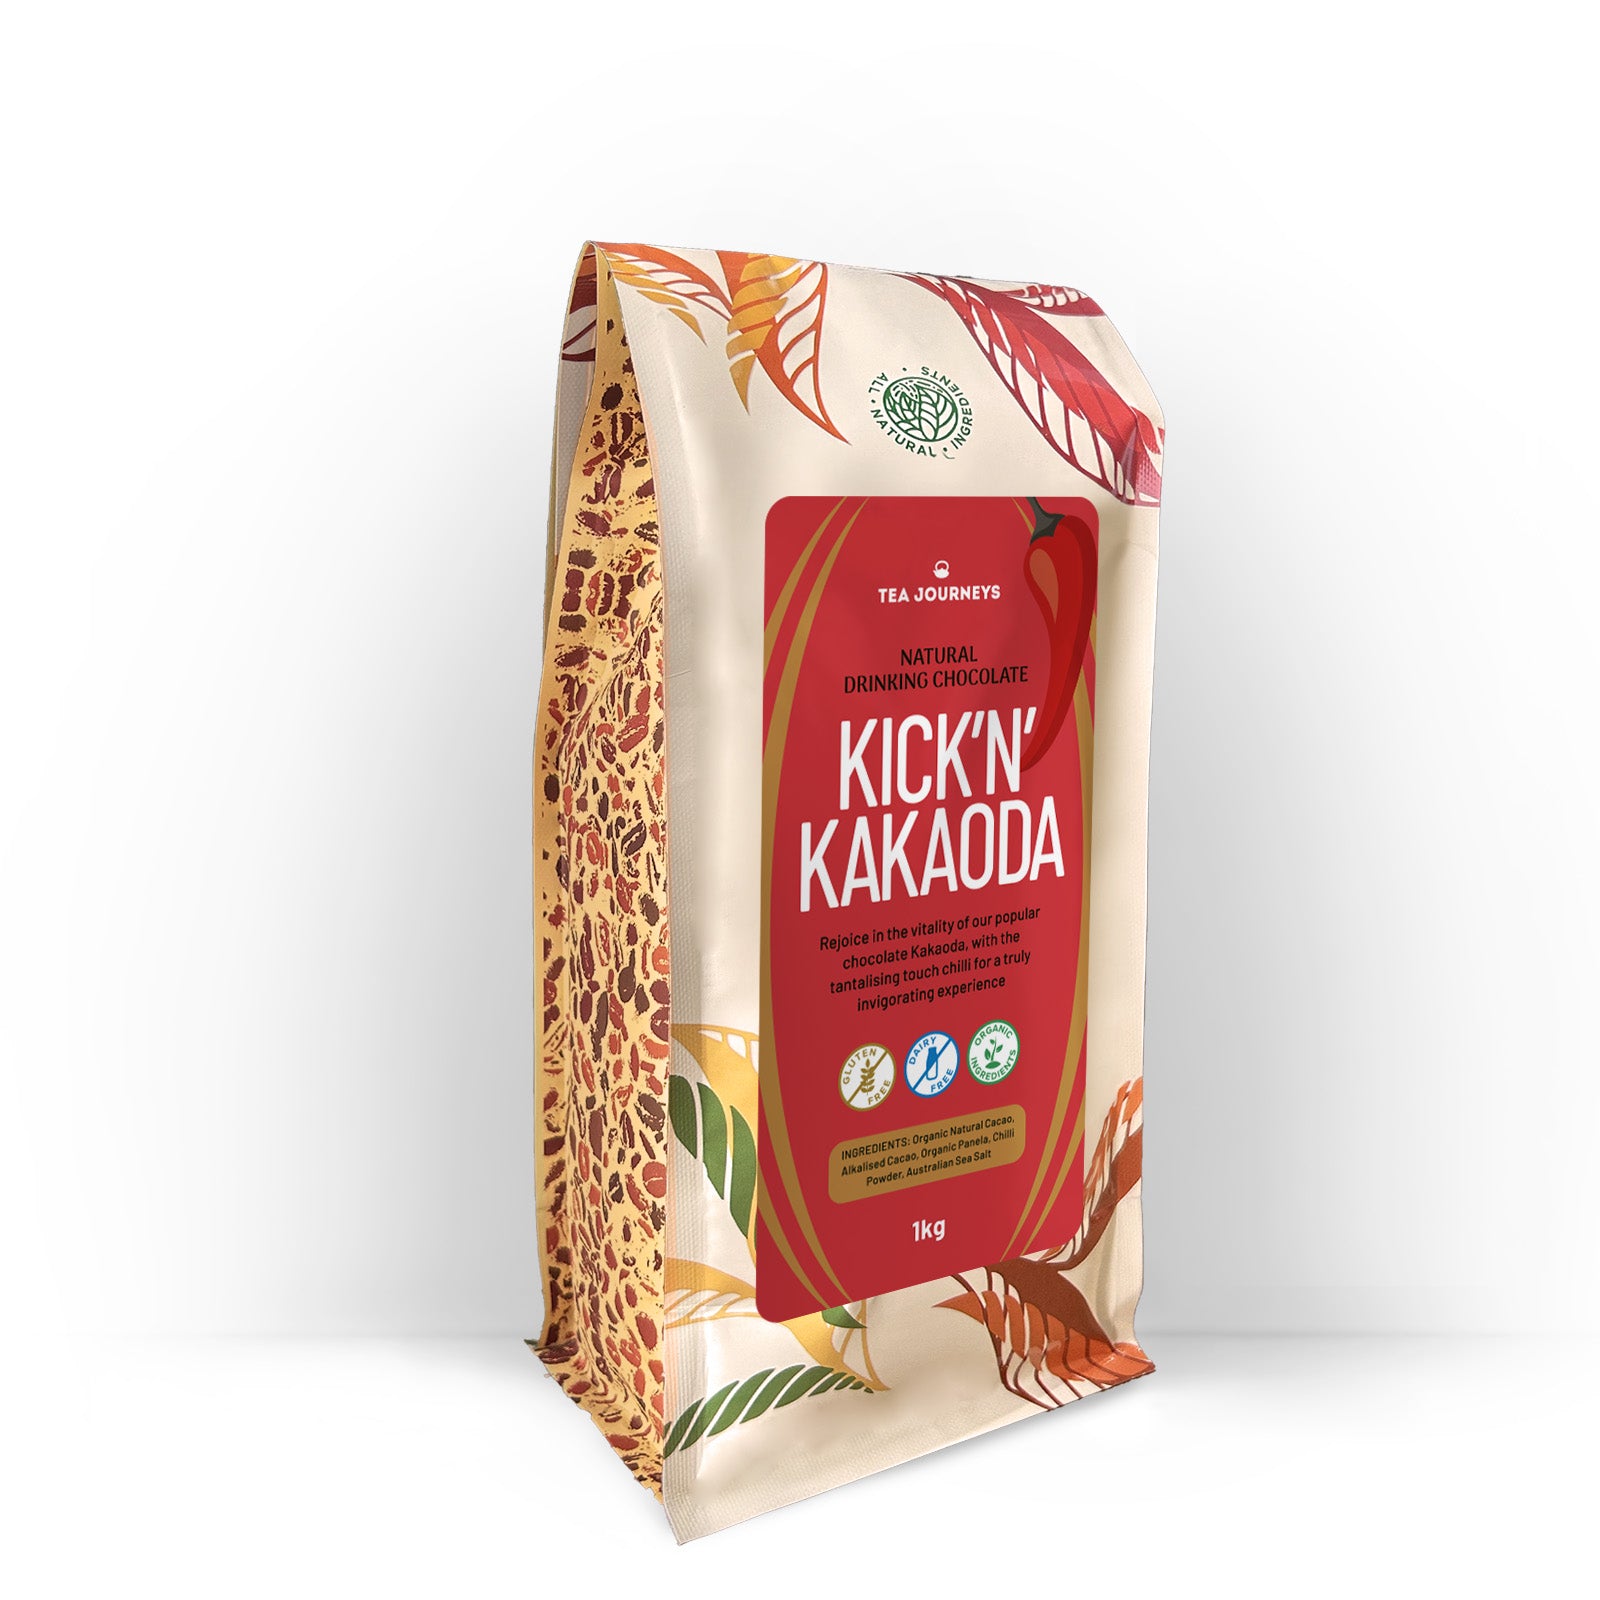 Kick N Kakaoda -  All Natural Spicy Drinking Chocolate